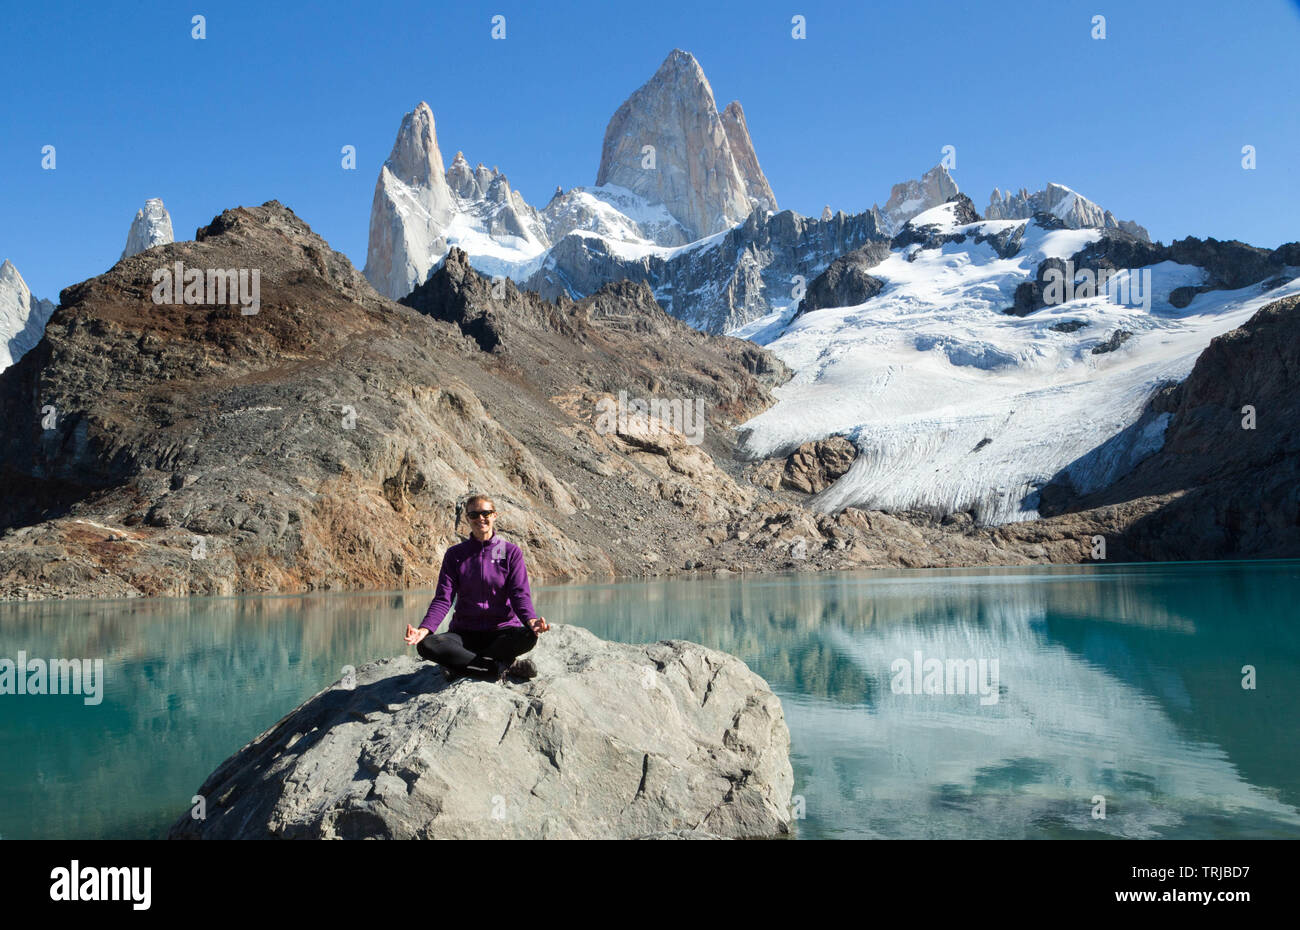 Fitz Roy, Laguna de Los Tres, Los Glaciares National Park, Patagonia, Argentina Stock Photo